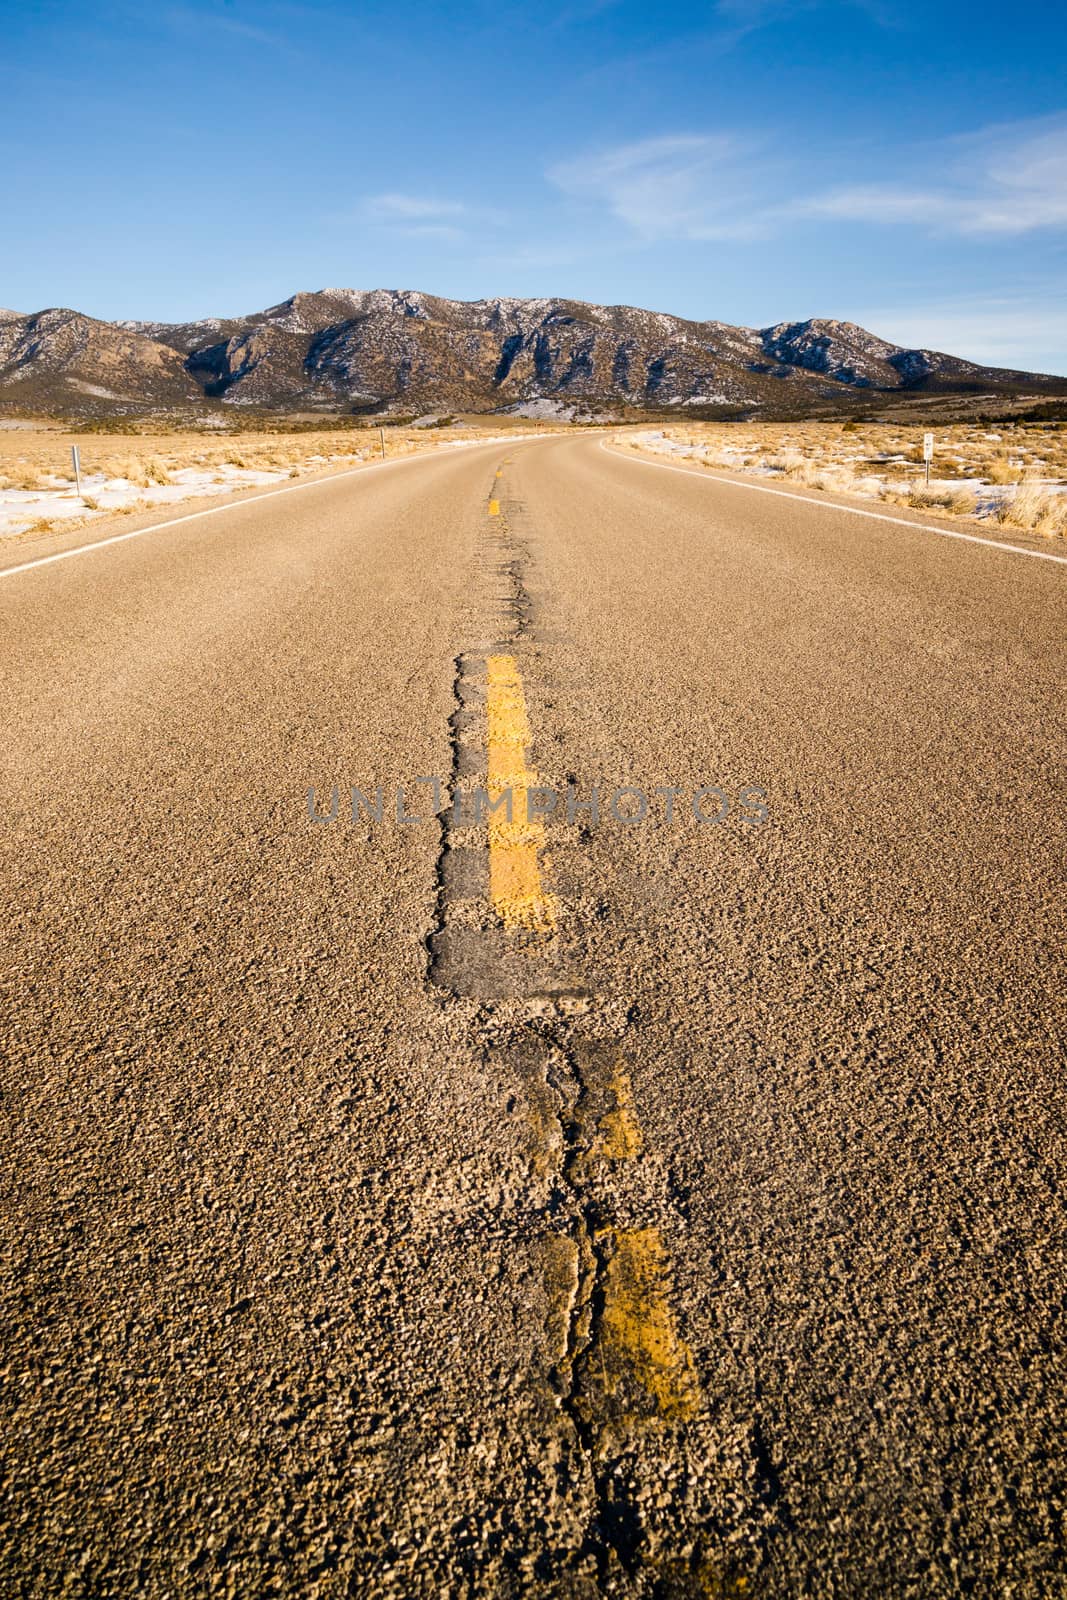 Blue Sky Worn Mountain Road Desert Travel Asphalt by ChrisBoswell